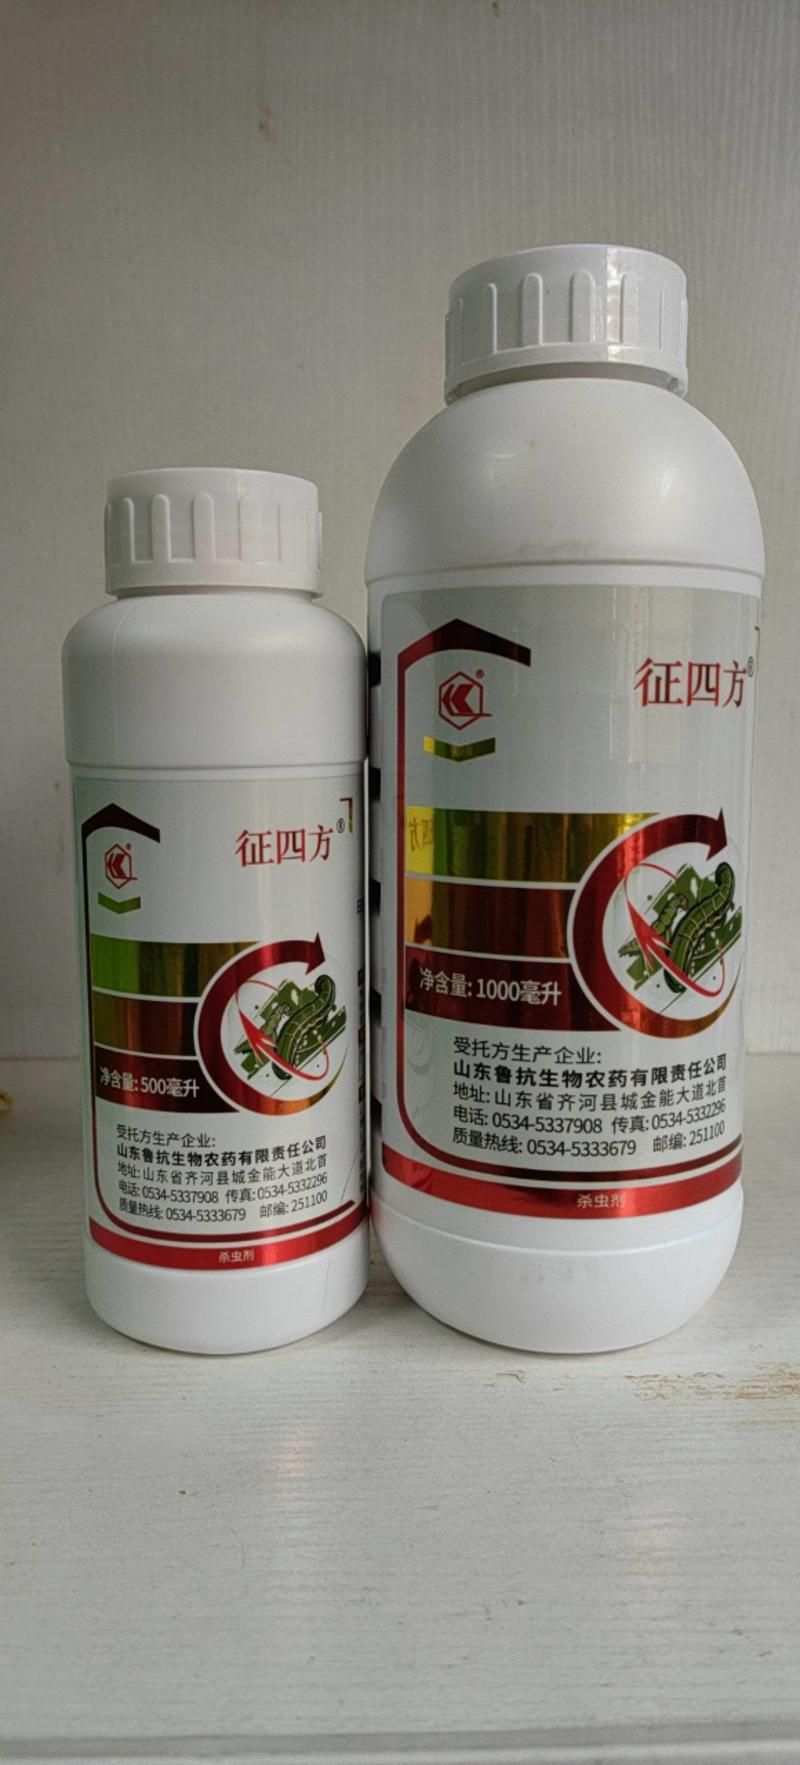 鲁抗征四方5%高氯甲维盐果树蔬菜杀虫剂1000毫升